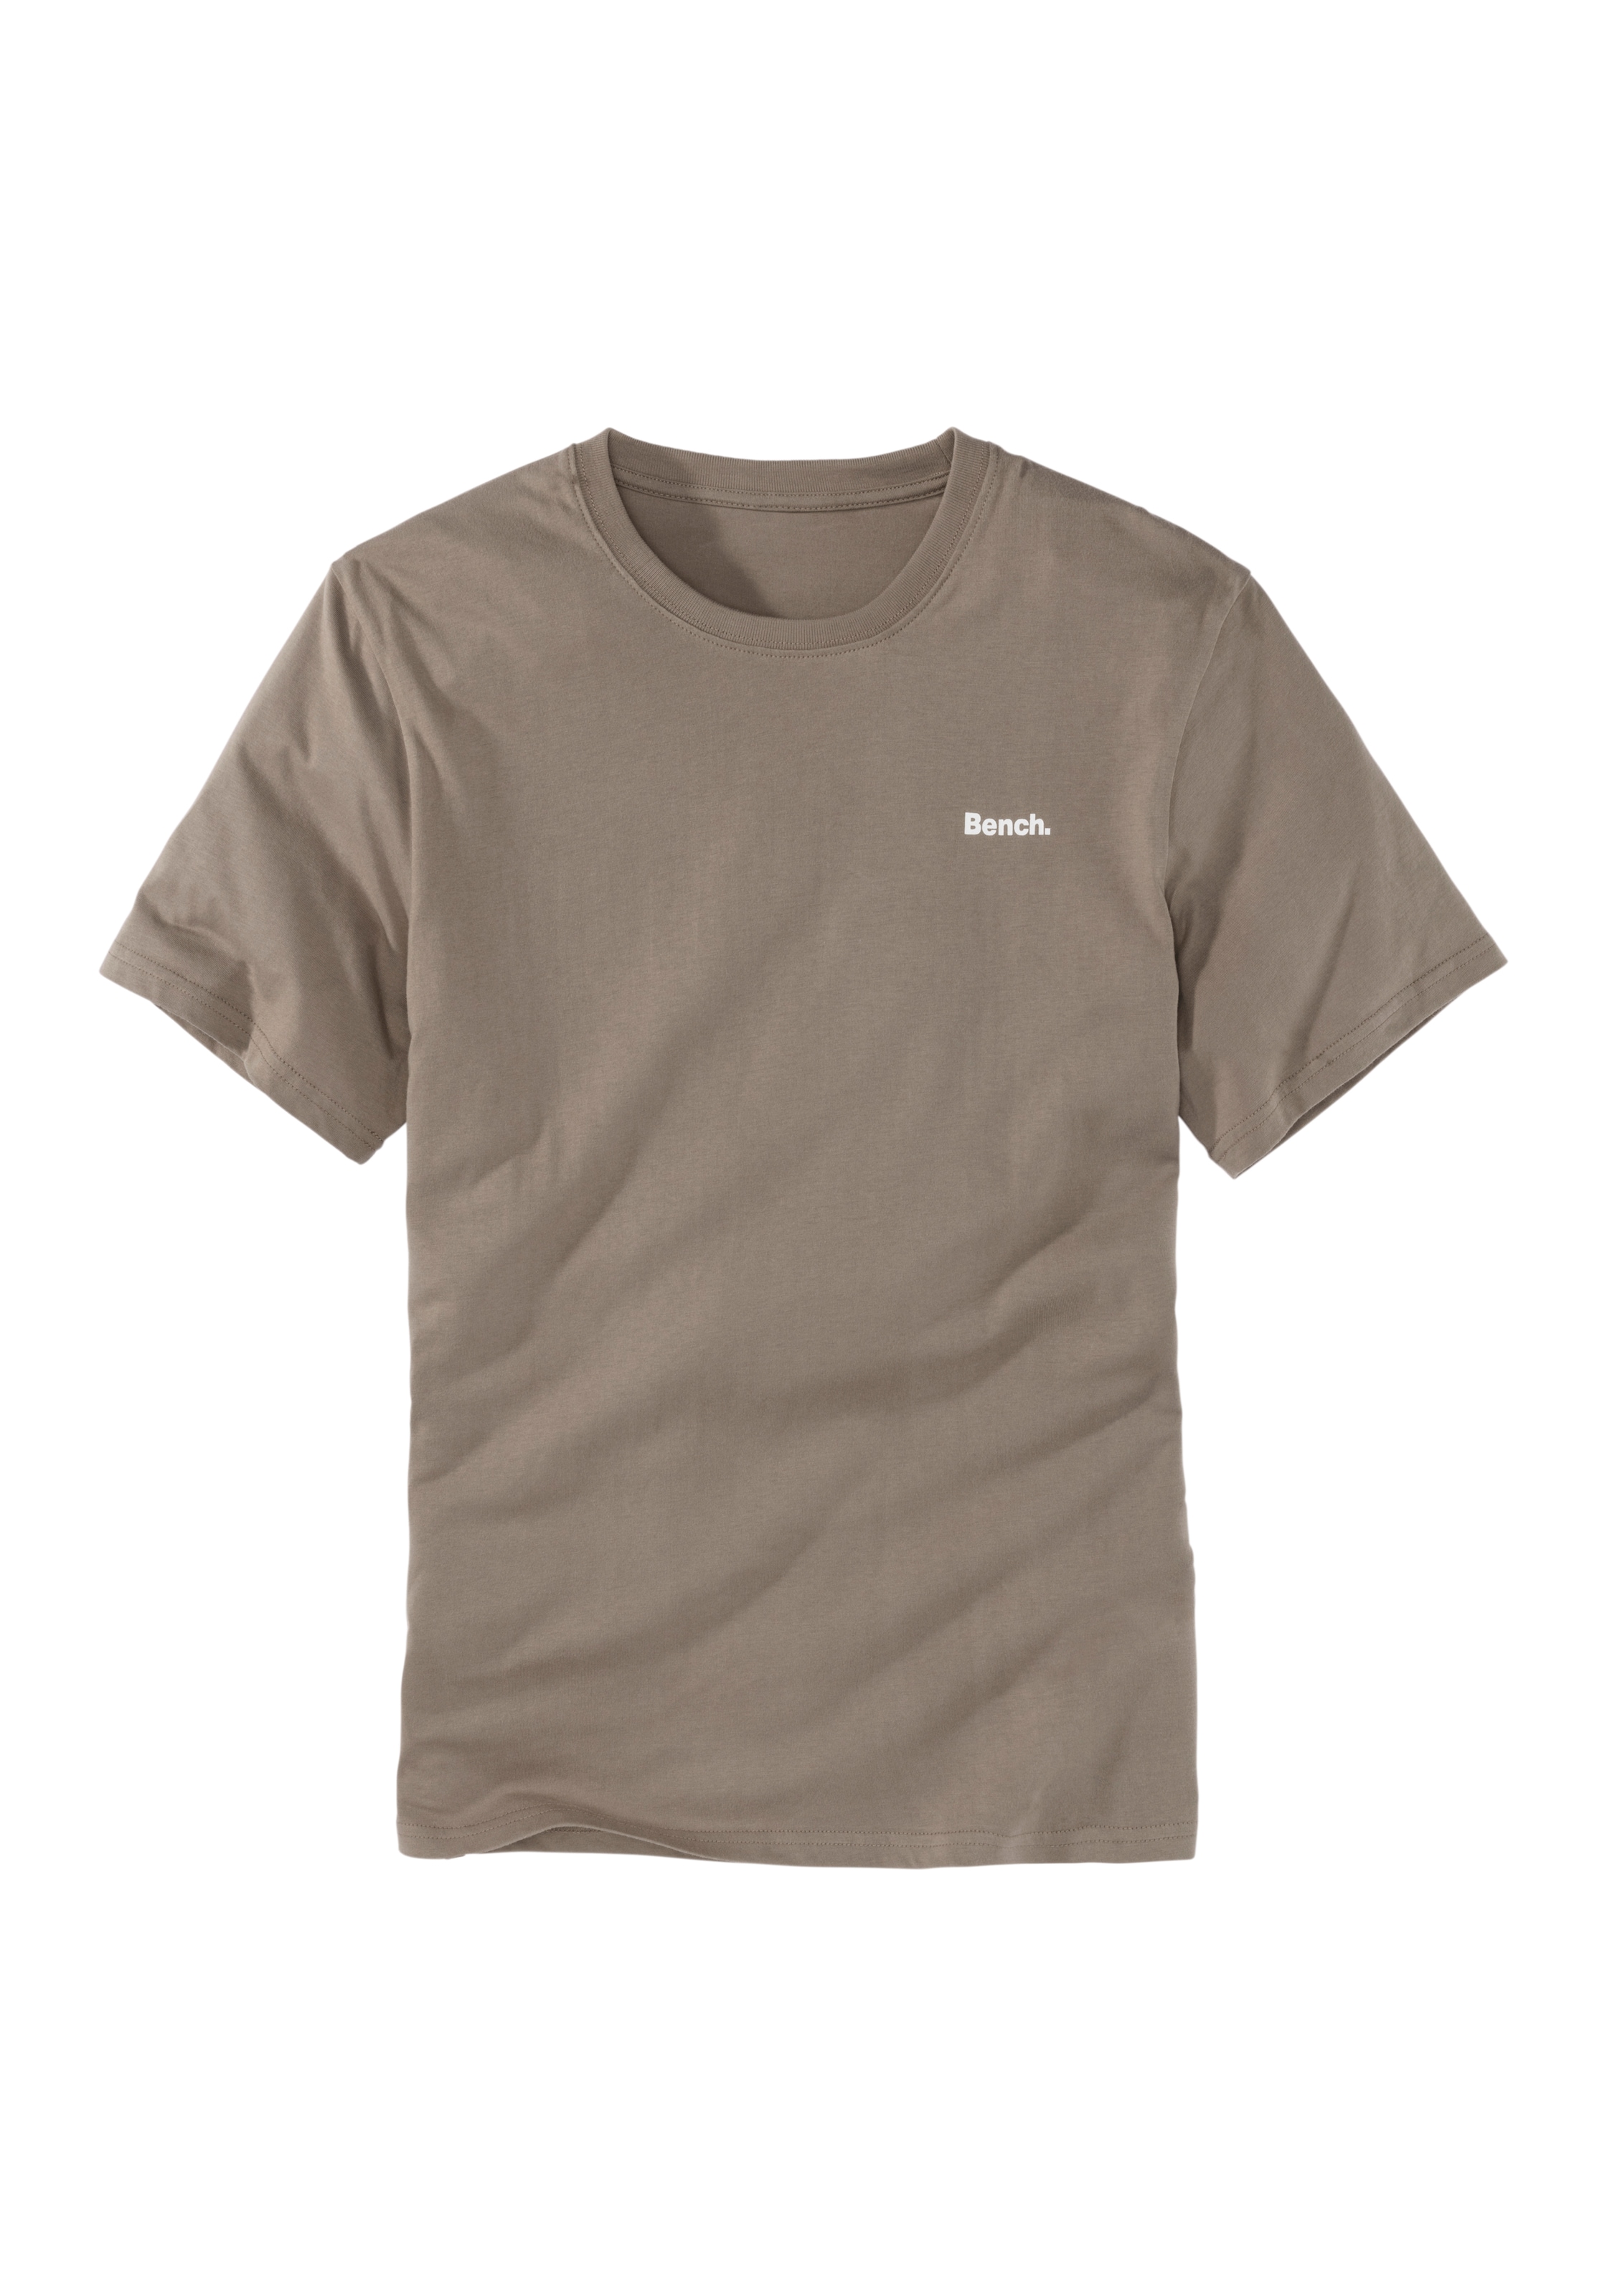 Bench. T-Shirt, mit kleinem Markenaufdruck vorn